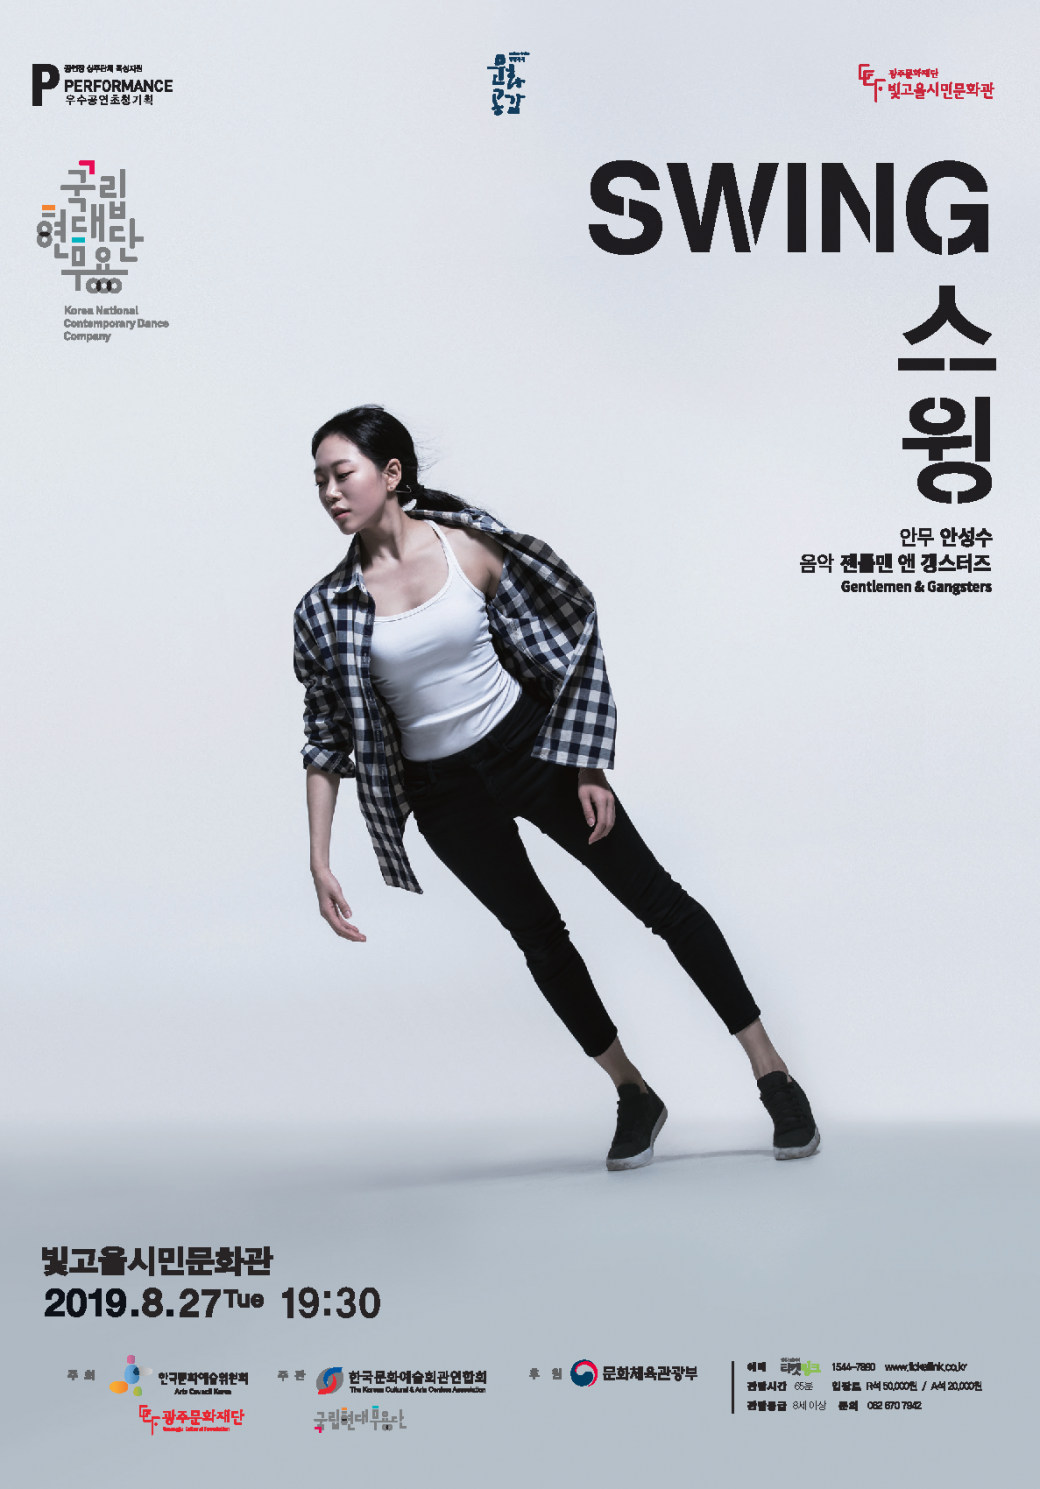 [방방곡곡] 국립현대무용단의 '스윙(젠틀 앤 갱스터즈 라이브 연주)' 2019. 8. 27.(목) 19:30 